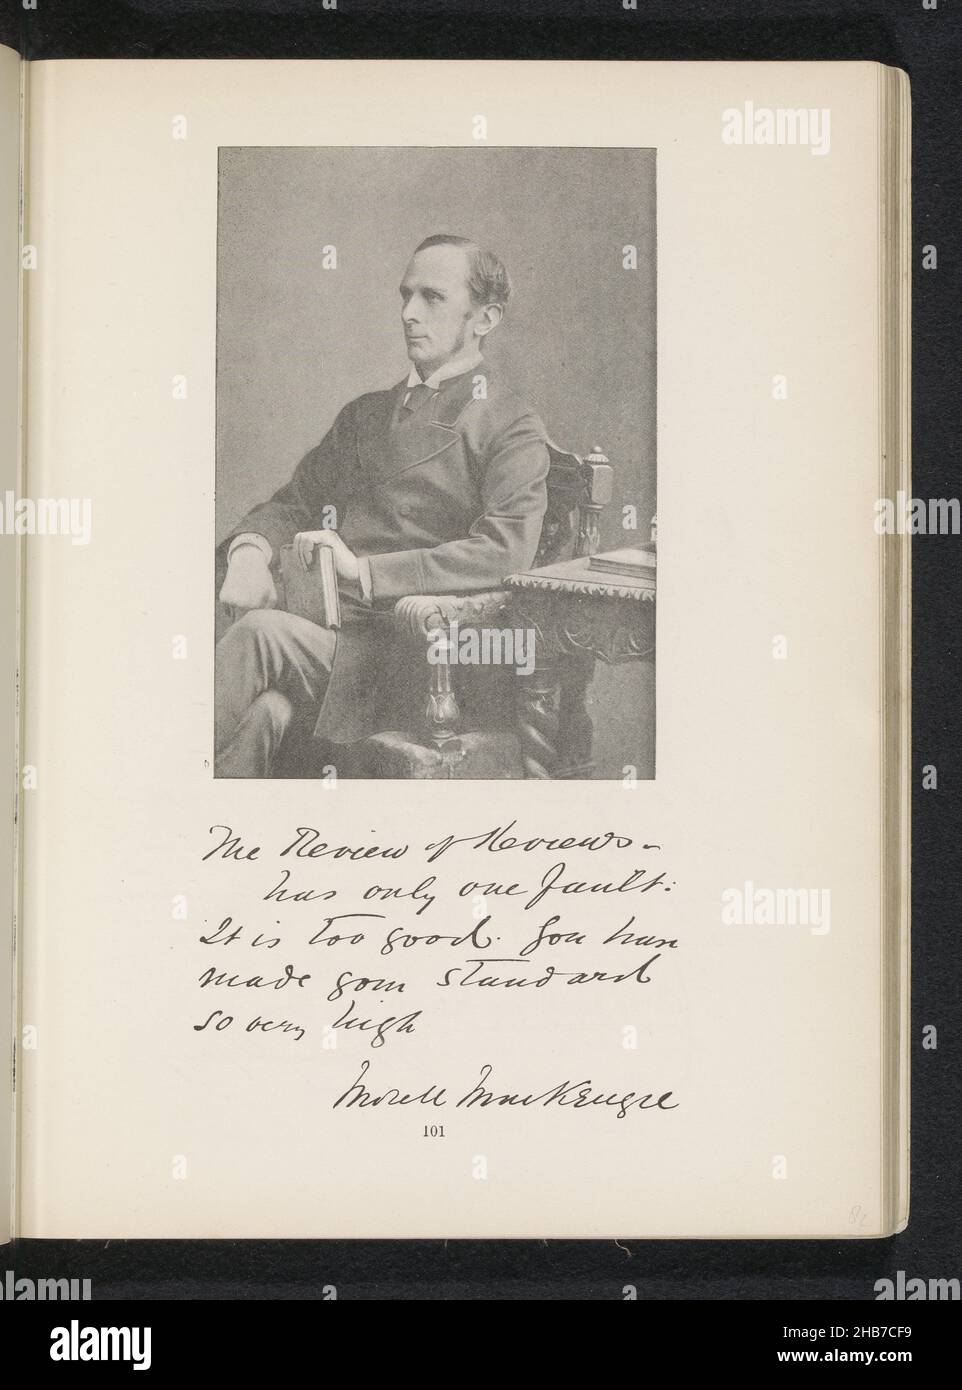 Porträt von Morell Mackenzie, Byrne & Co., anonym, c. 1881 - in oder vor 1891, Papier, Höhe 135 mm × Breite 94 mm Stockfoto